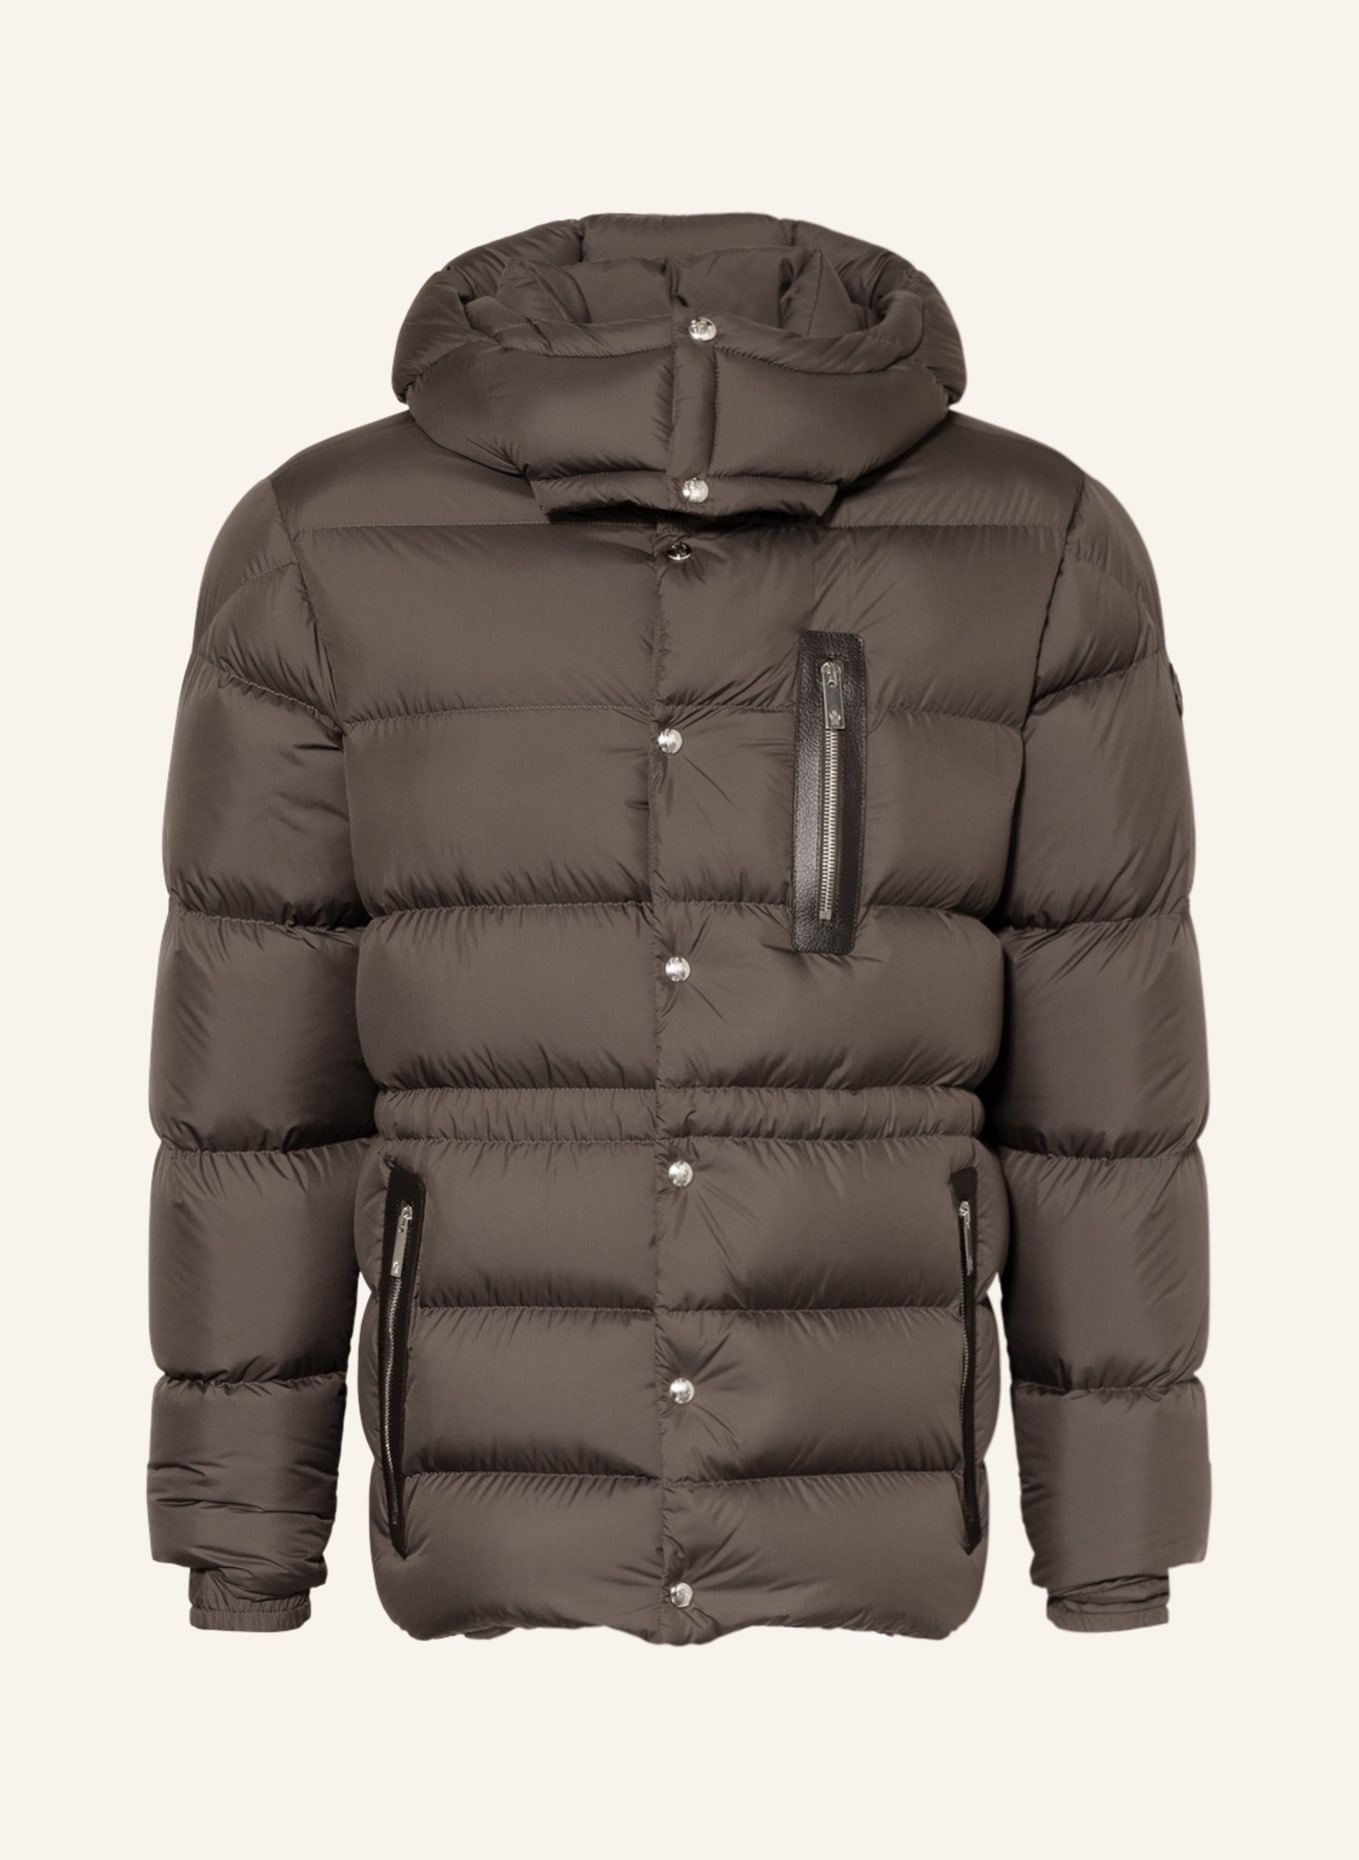 MONCLER Down jacket BAUGES with removable hood, Color: OLIVE (Image 1)